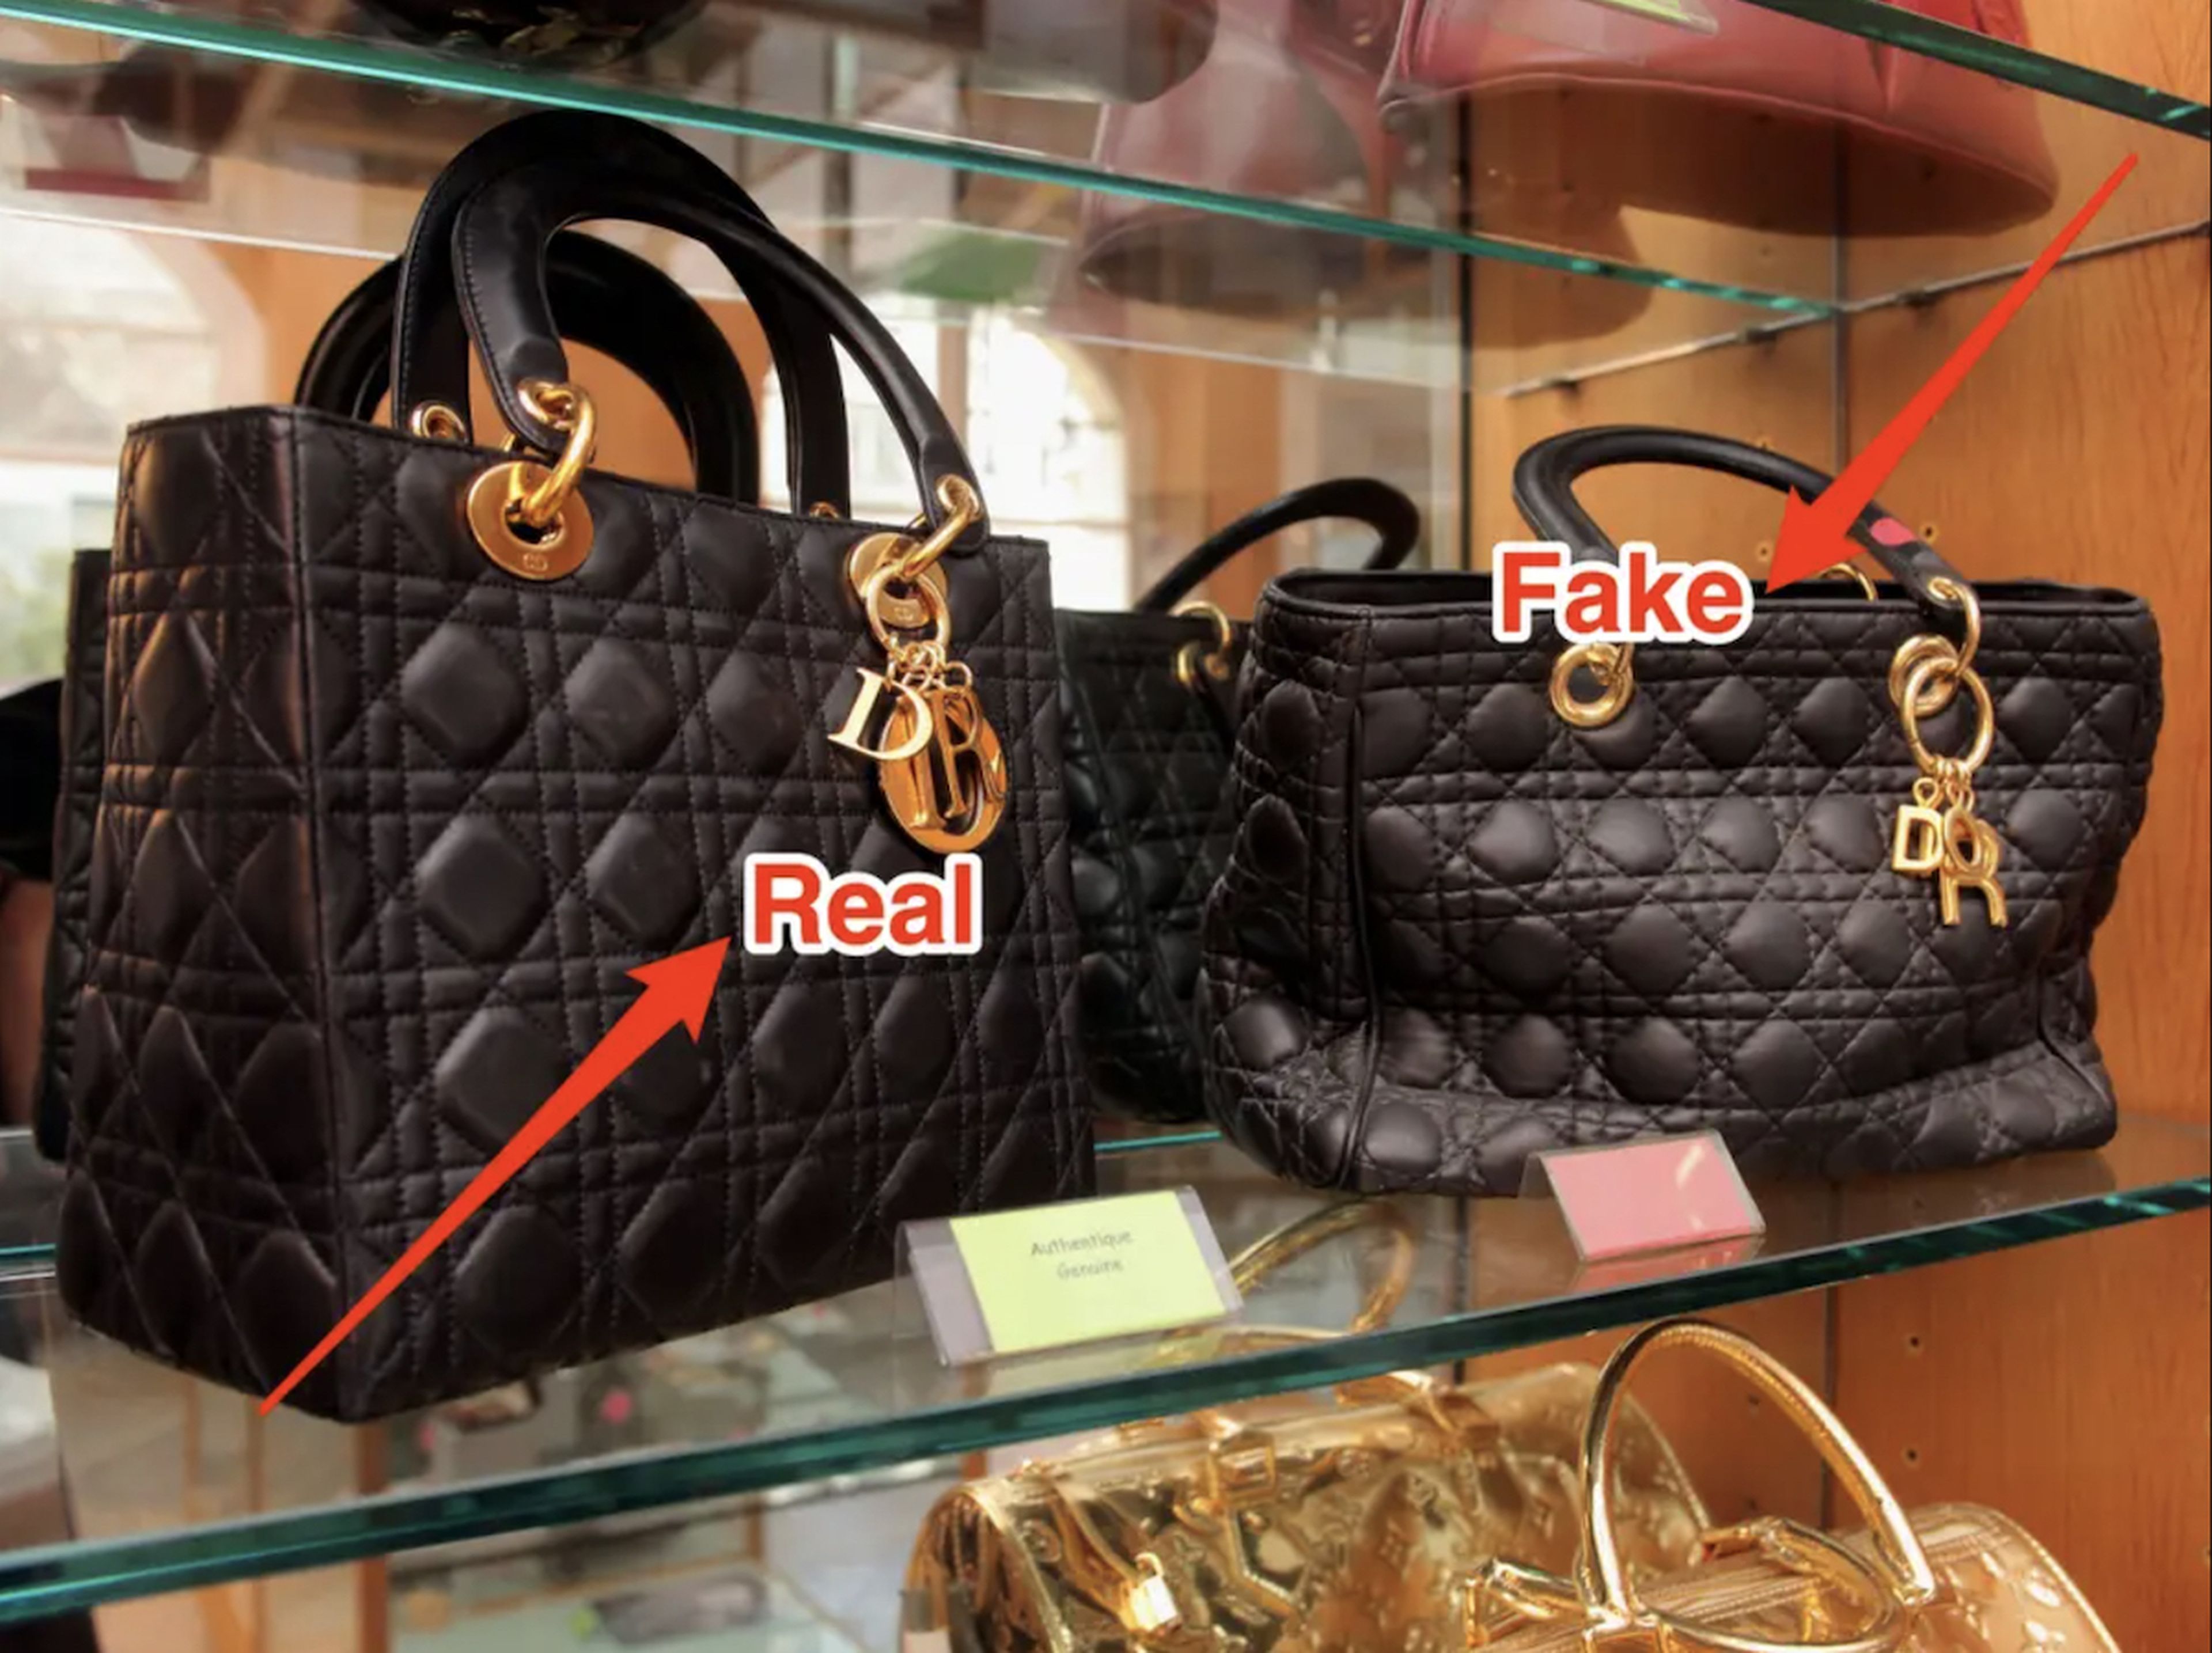 Las imitaciones tienen una larga historia. Bolsos Dior auténticos y falsificados se exponen en el Museo de la Falsificación de París en 2009. Las superfalsificaciones han llevado esta práctica a un nuevo nivel.